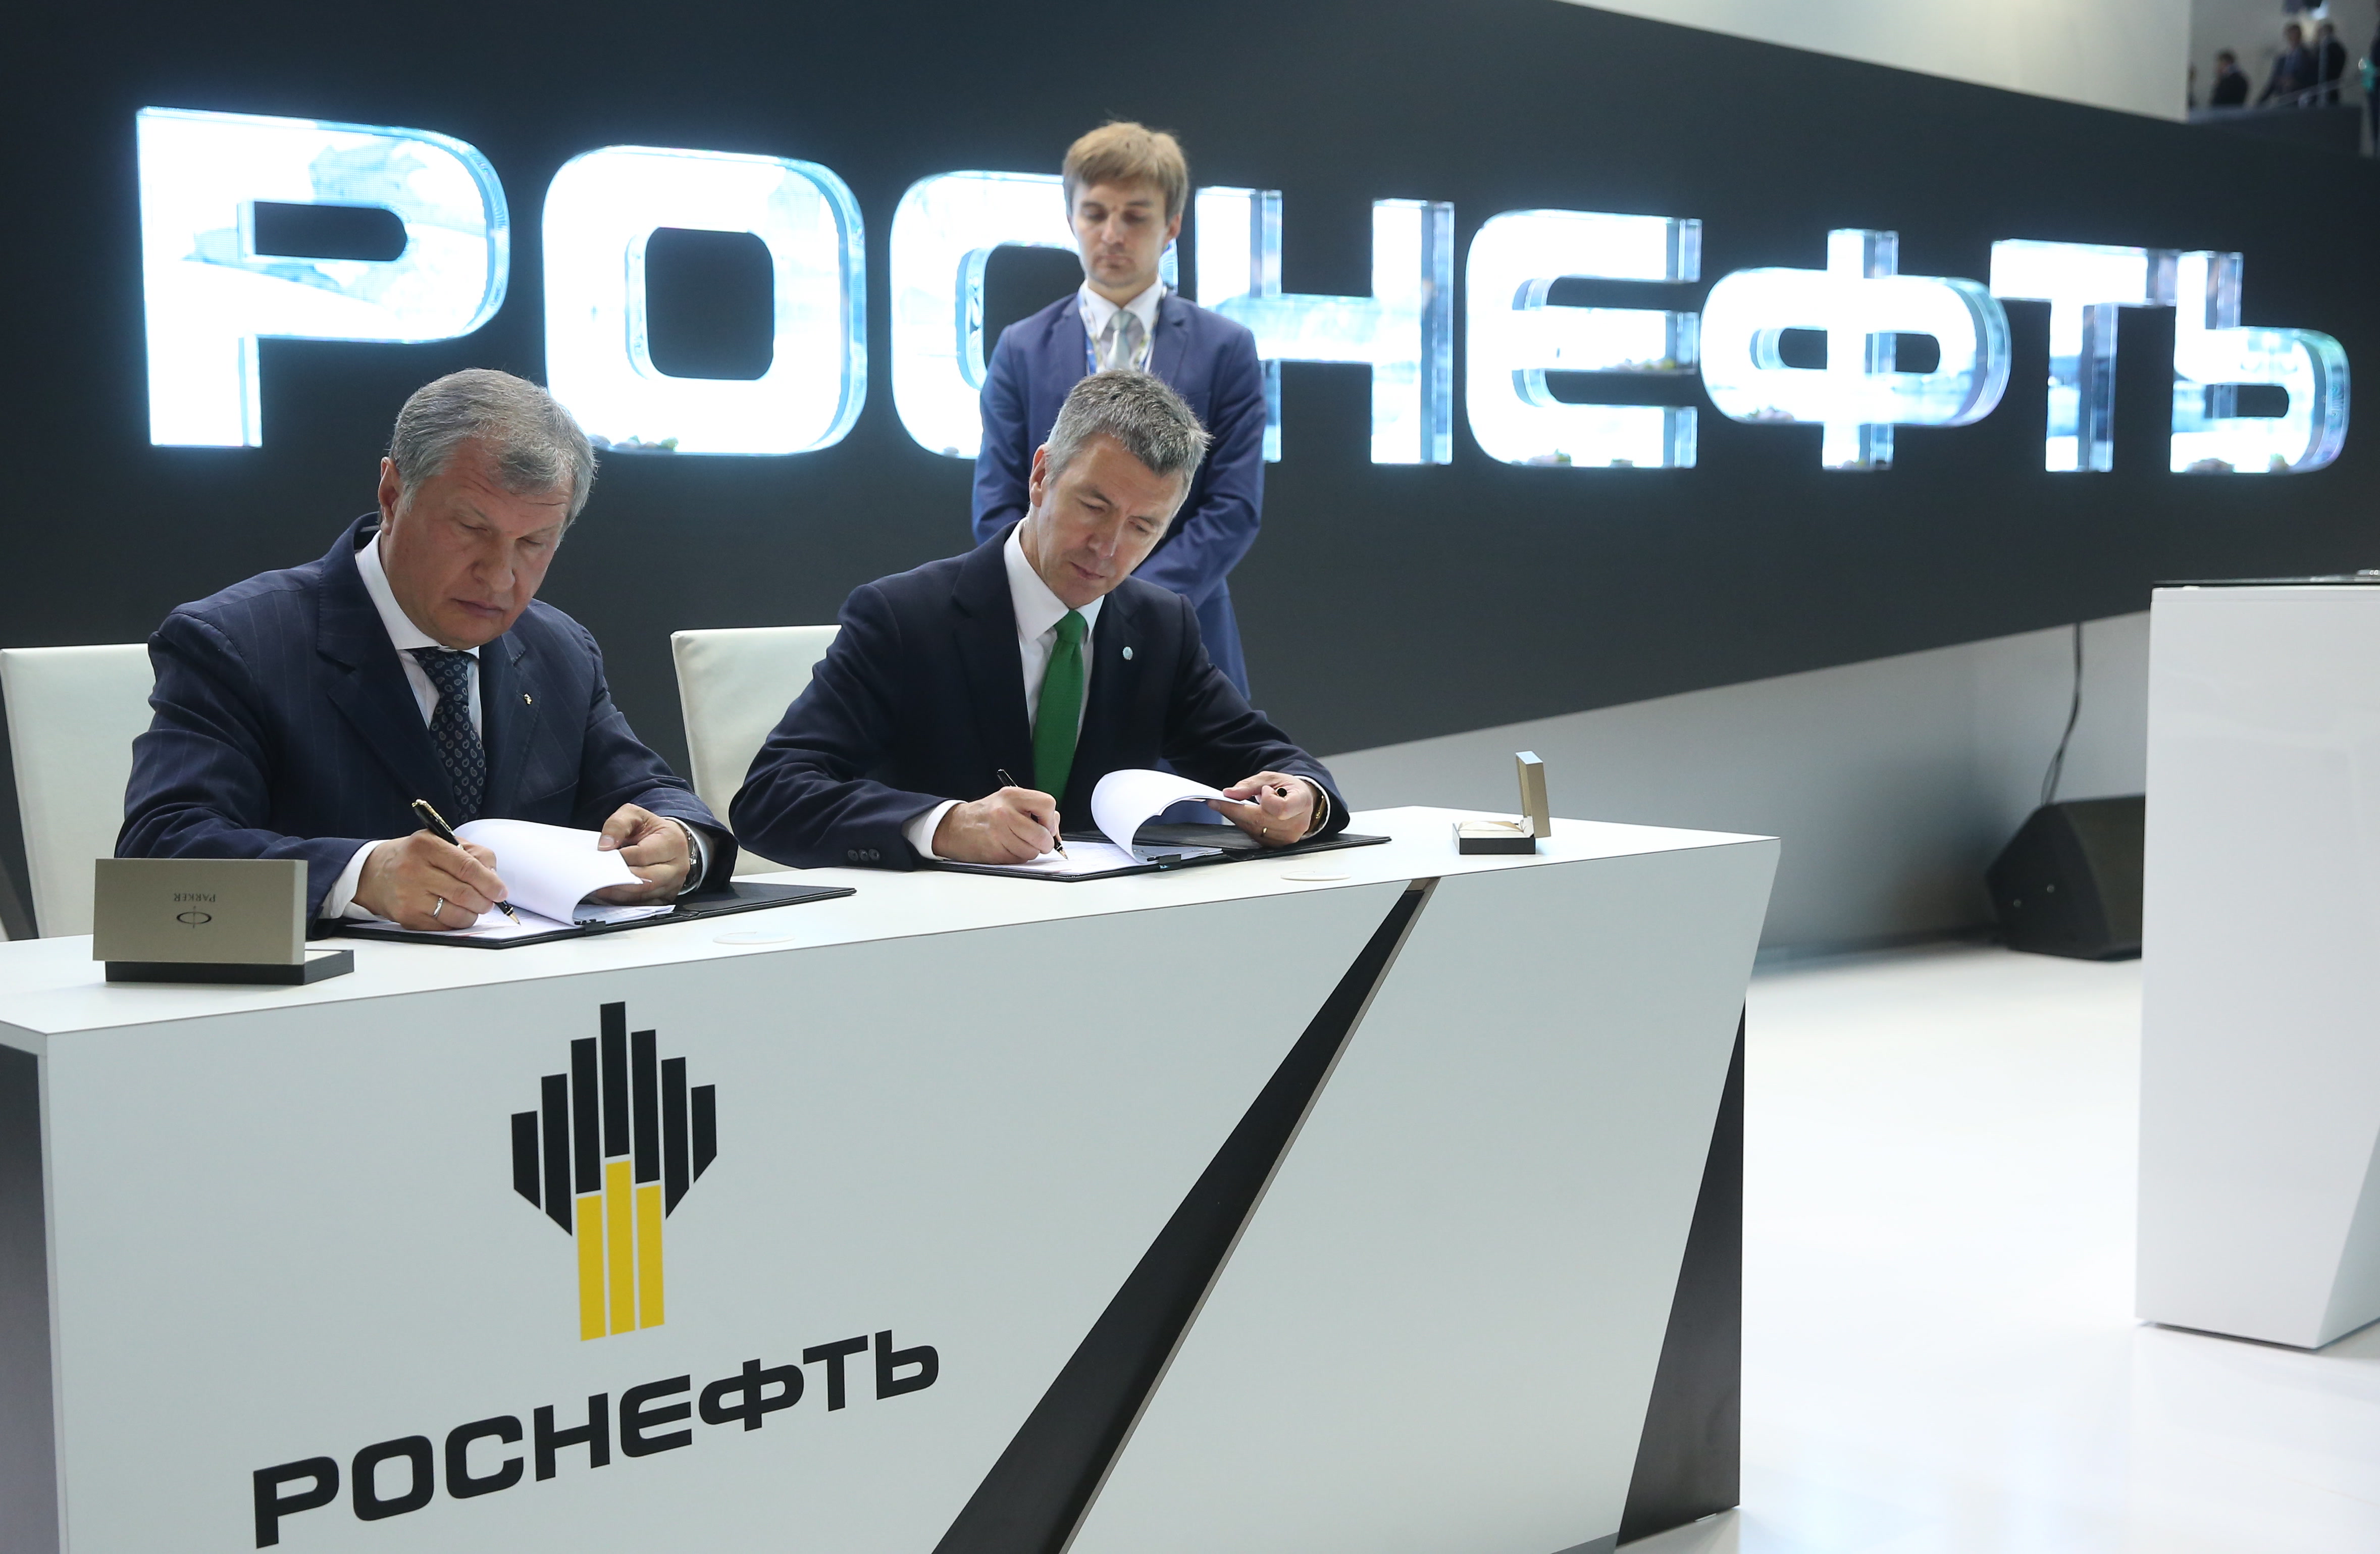 Този форум ще се запомни със серията от преки контракти и споразумения, главни участници на които бяха „Газпром“ и „Роснефт“.